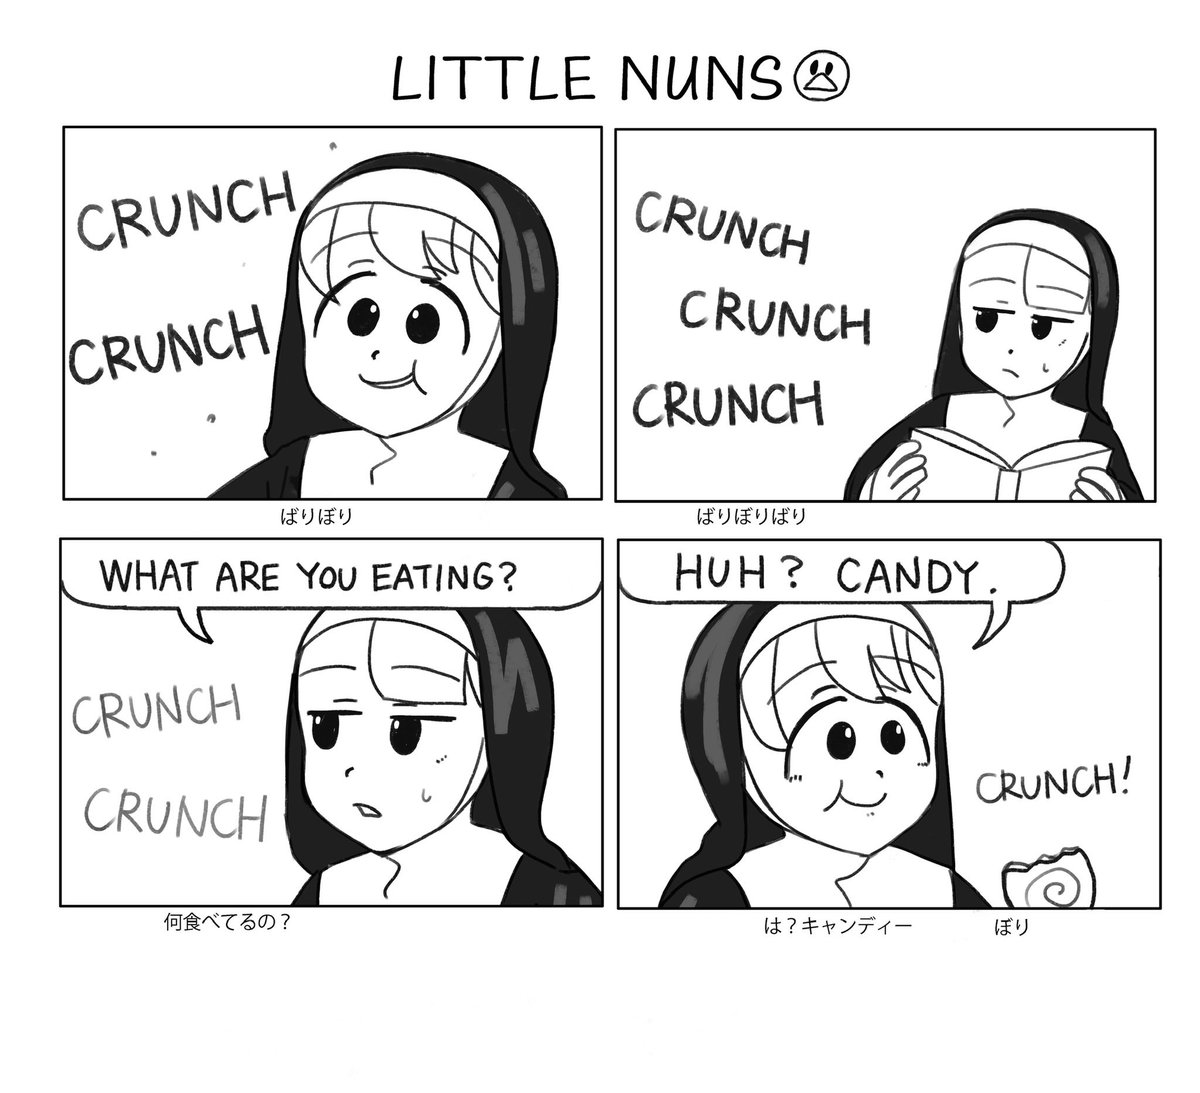 Crunch! Crunch! 